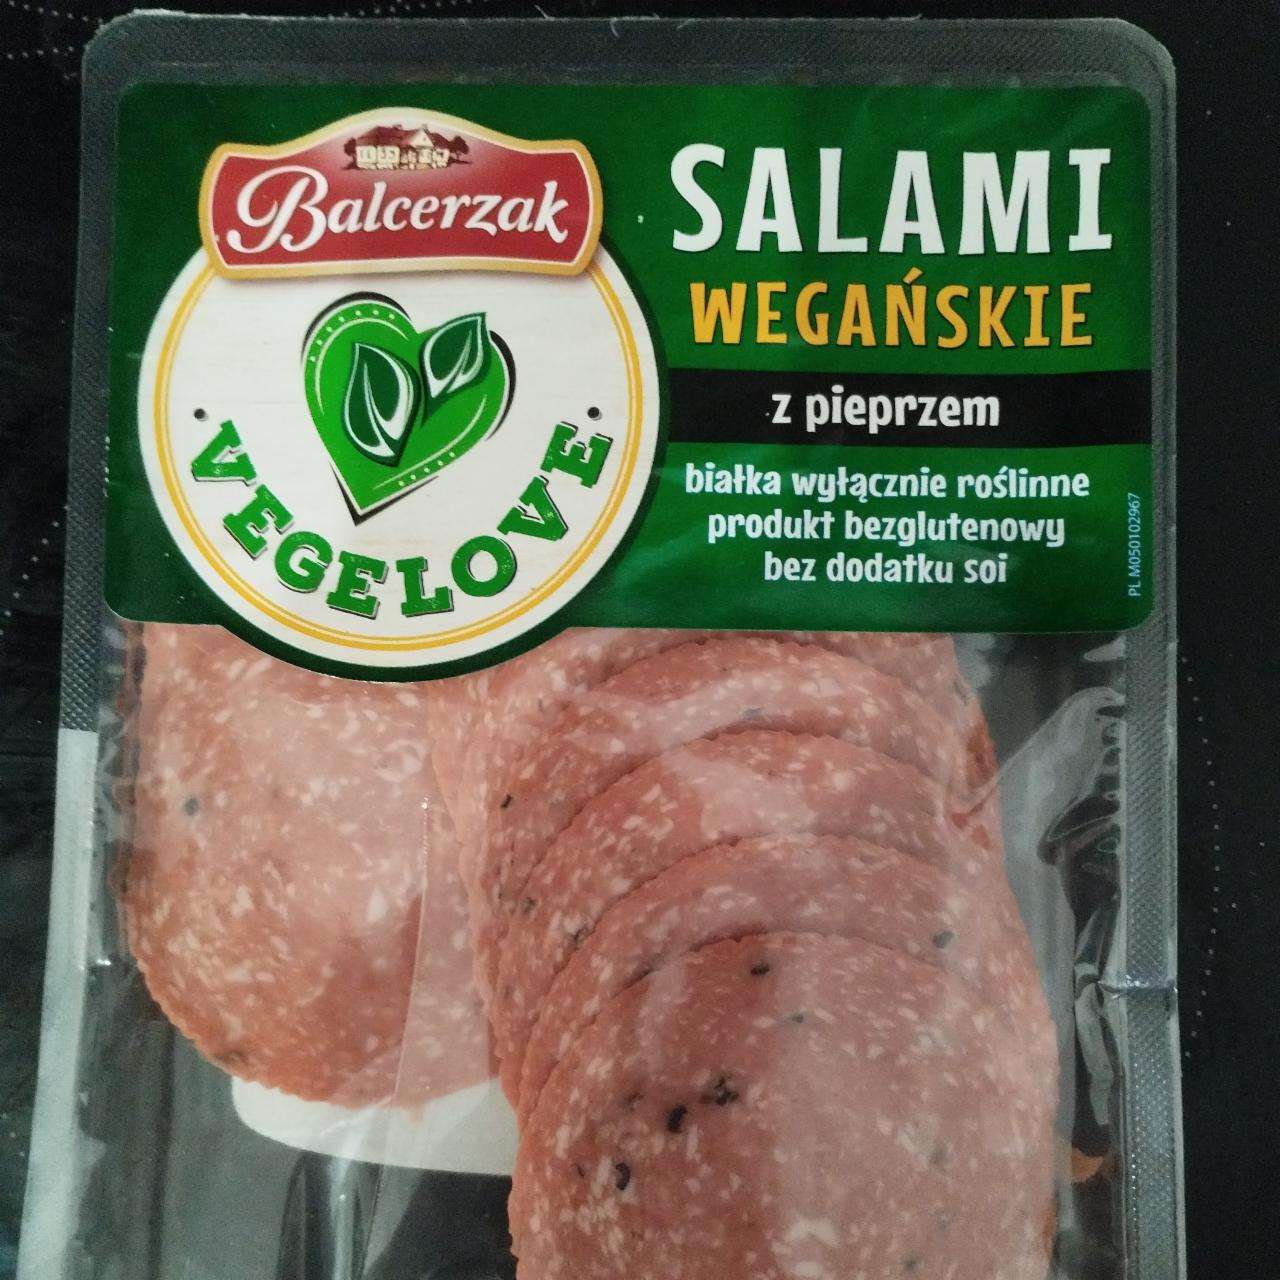 Zdjęcia - Salami wegańskie z pieprzem Balcerzak